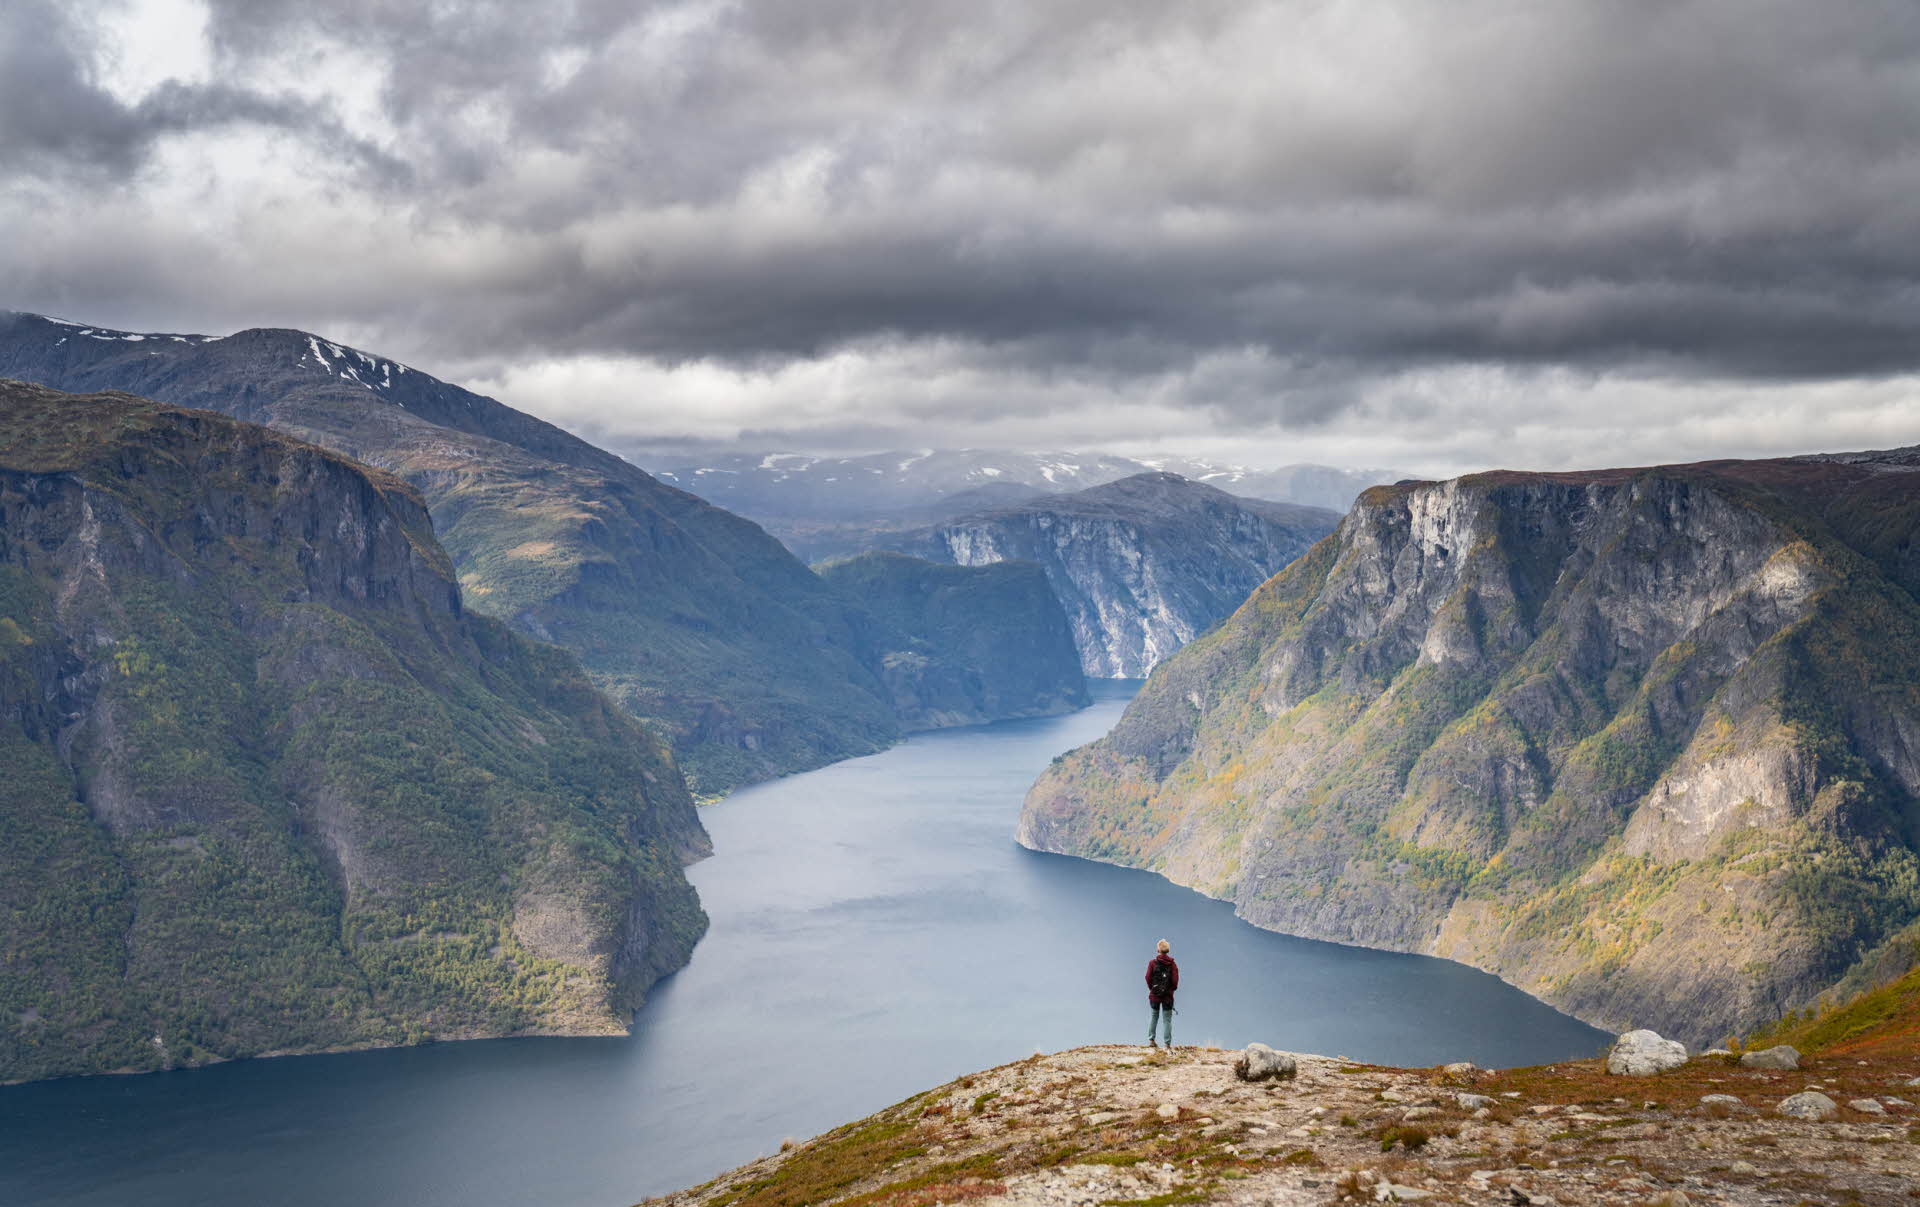 Une personne debout sur le sentier menant à Prest regarde l’Aurlandsfjord par une journée d’automne grise.